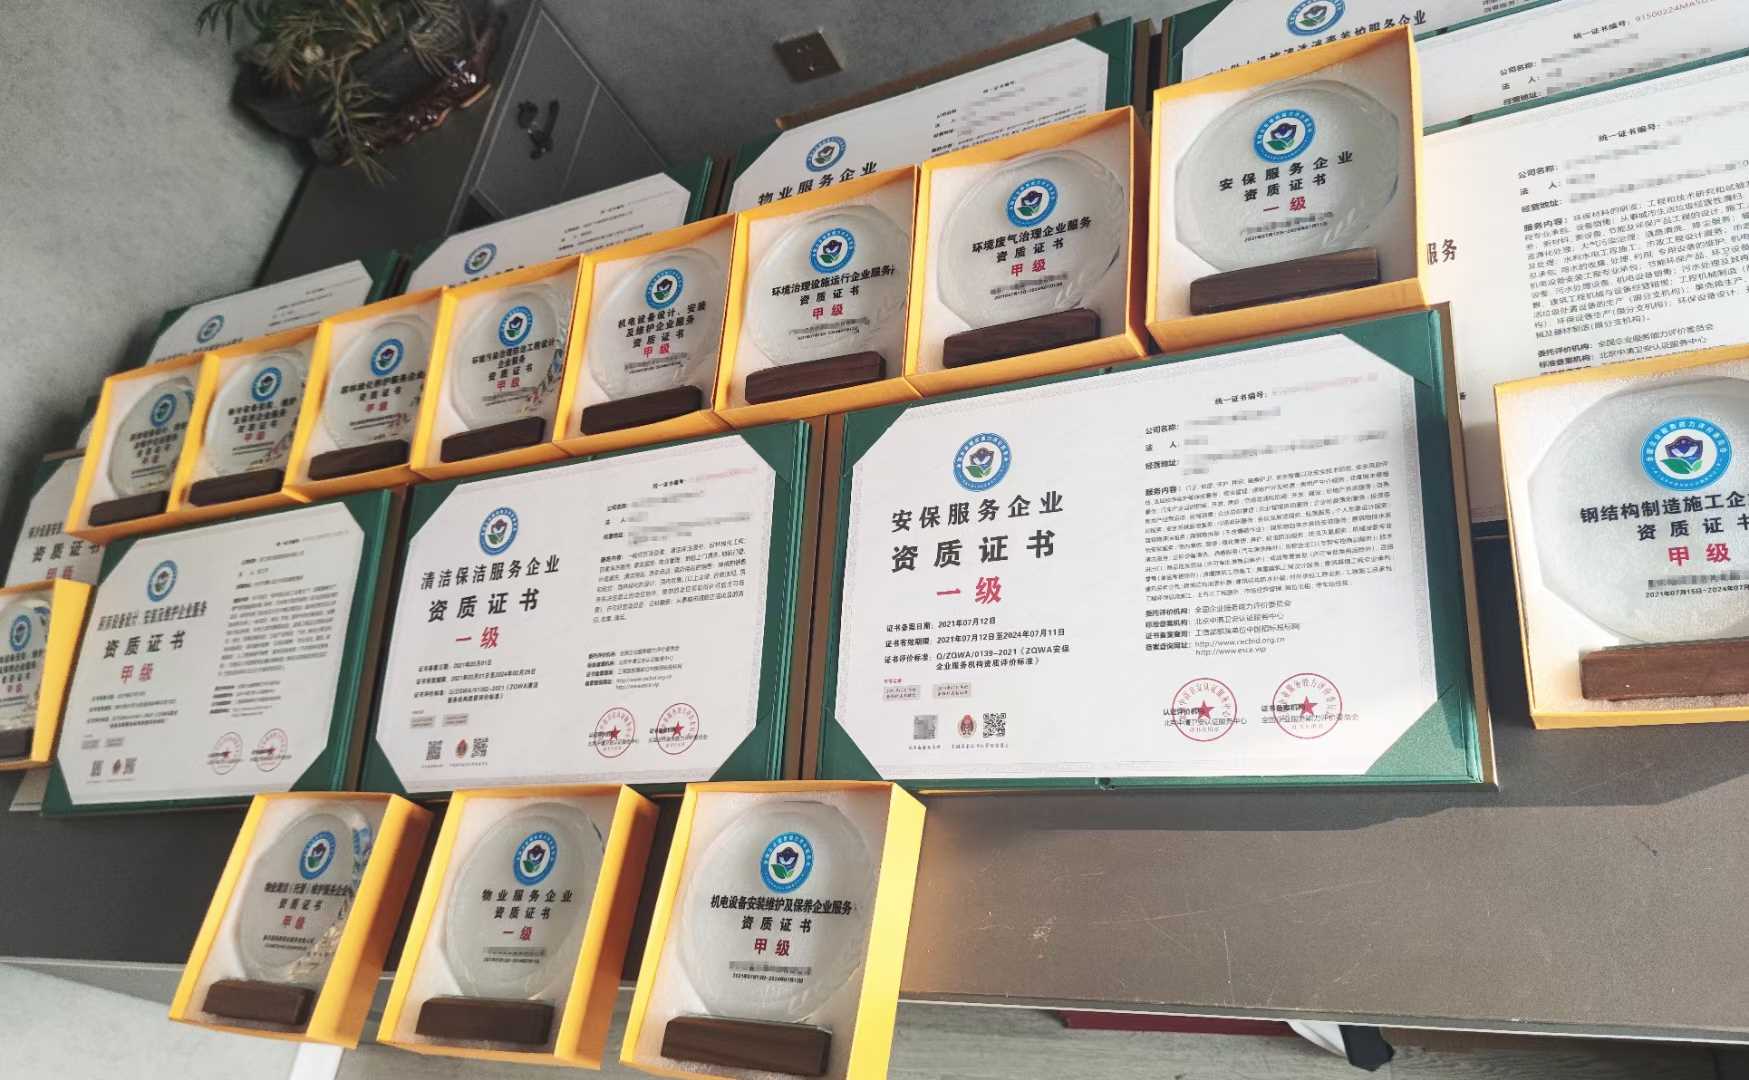 深圳塑胶企业AAA信用等级认证申请